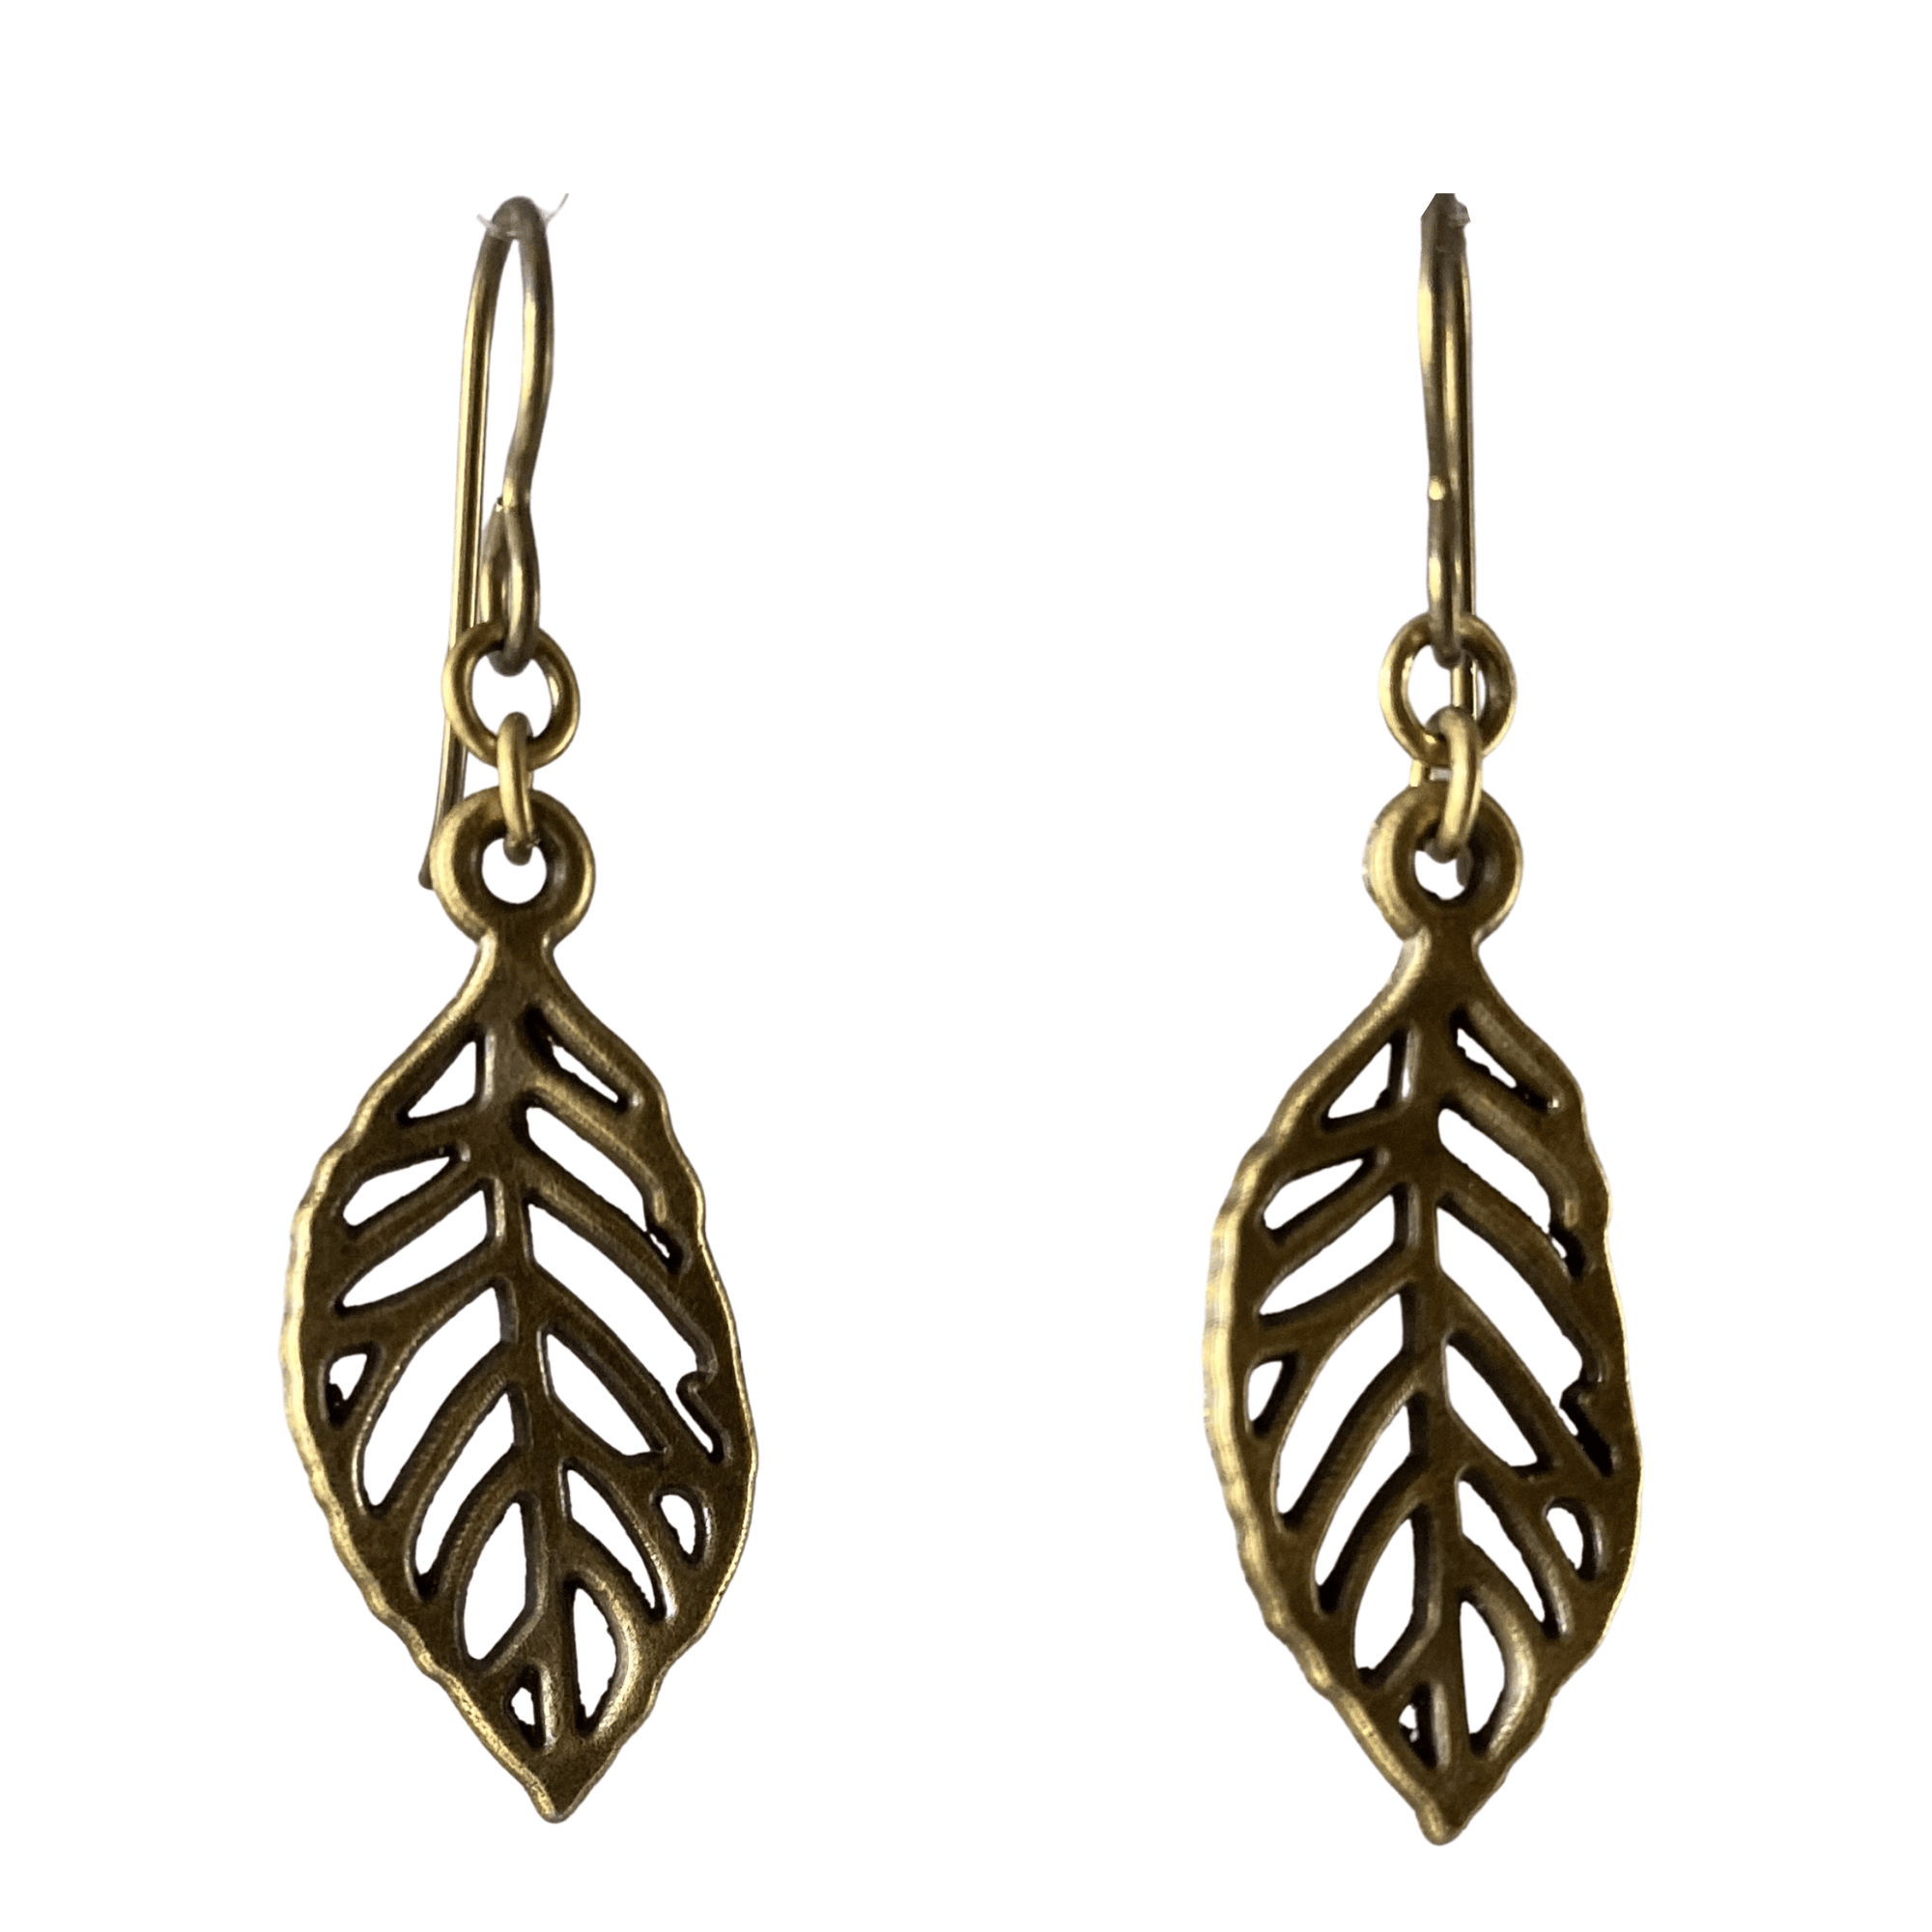 Antique Brass Oval Leaf Earrings for Sensitive Ears-Earrings- Creative Jewelry by Marcia